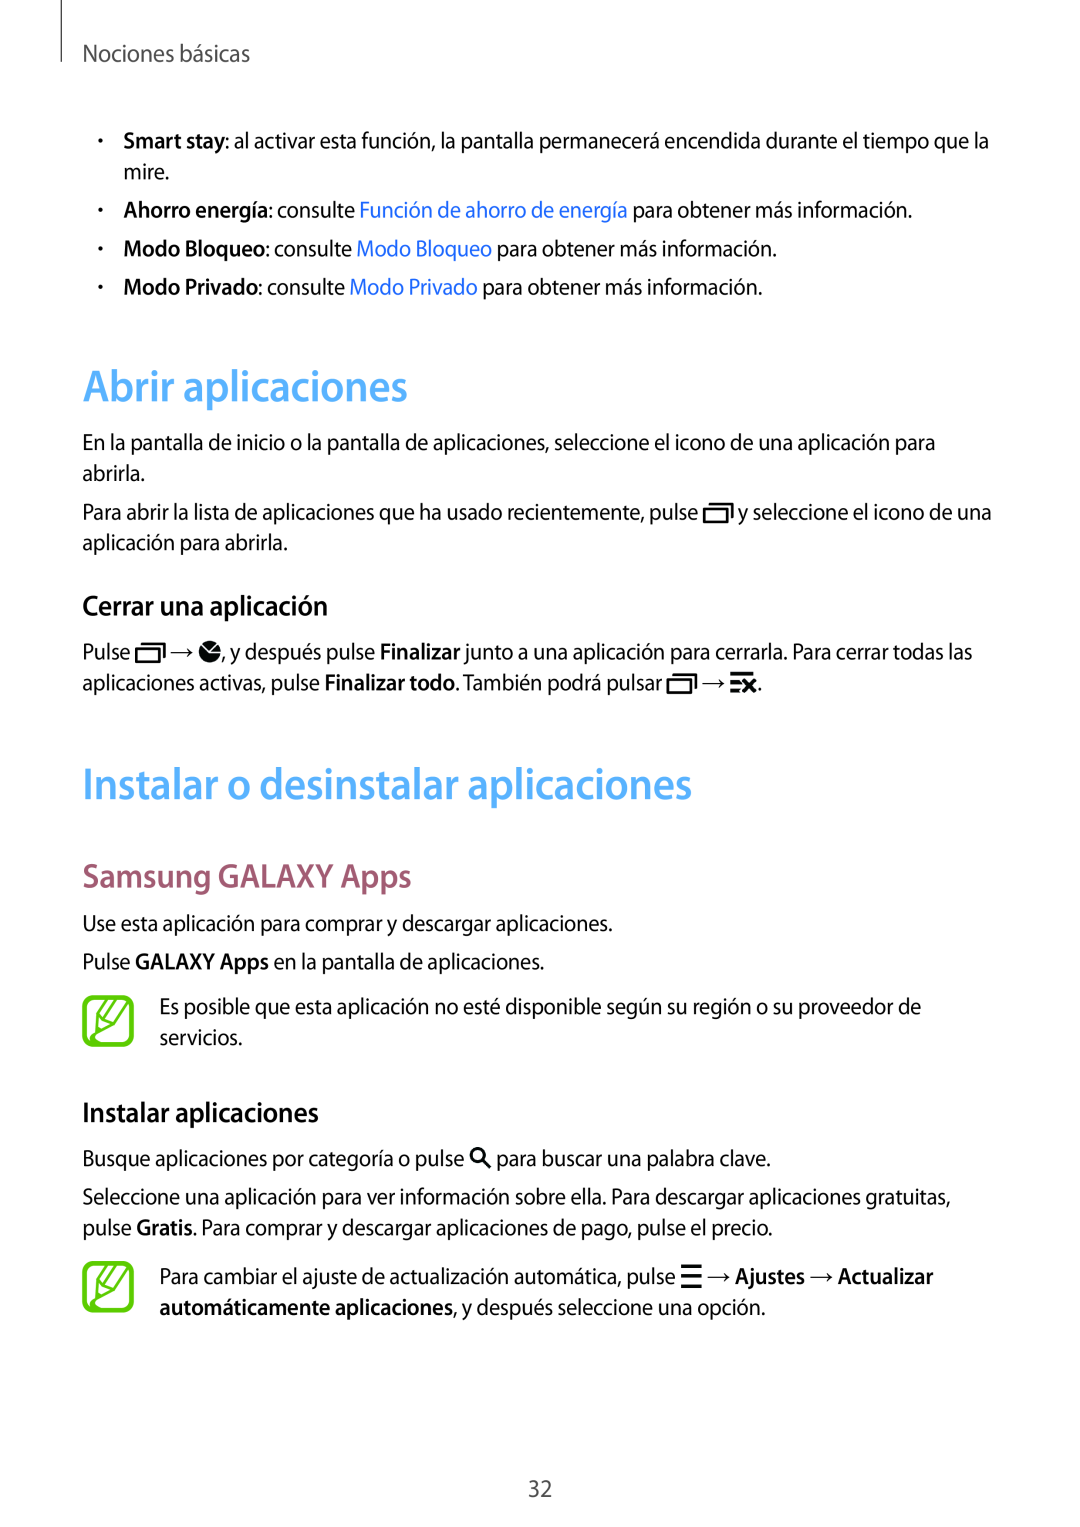 Samsung SM-A500FZKUPHE Abrir aplicaciones, Instalar o desinstalar aplicaciones, Samsung GALAXY Apps, Cerrar una aplicación 